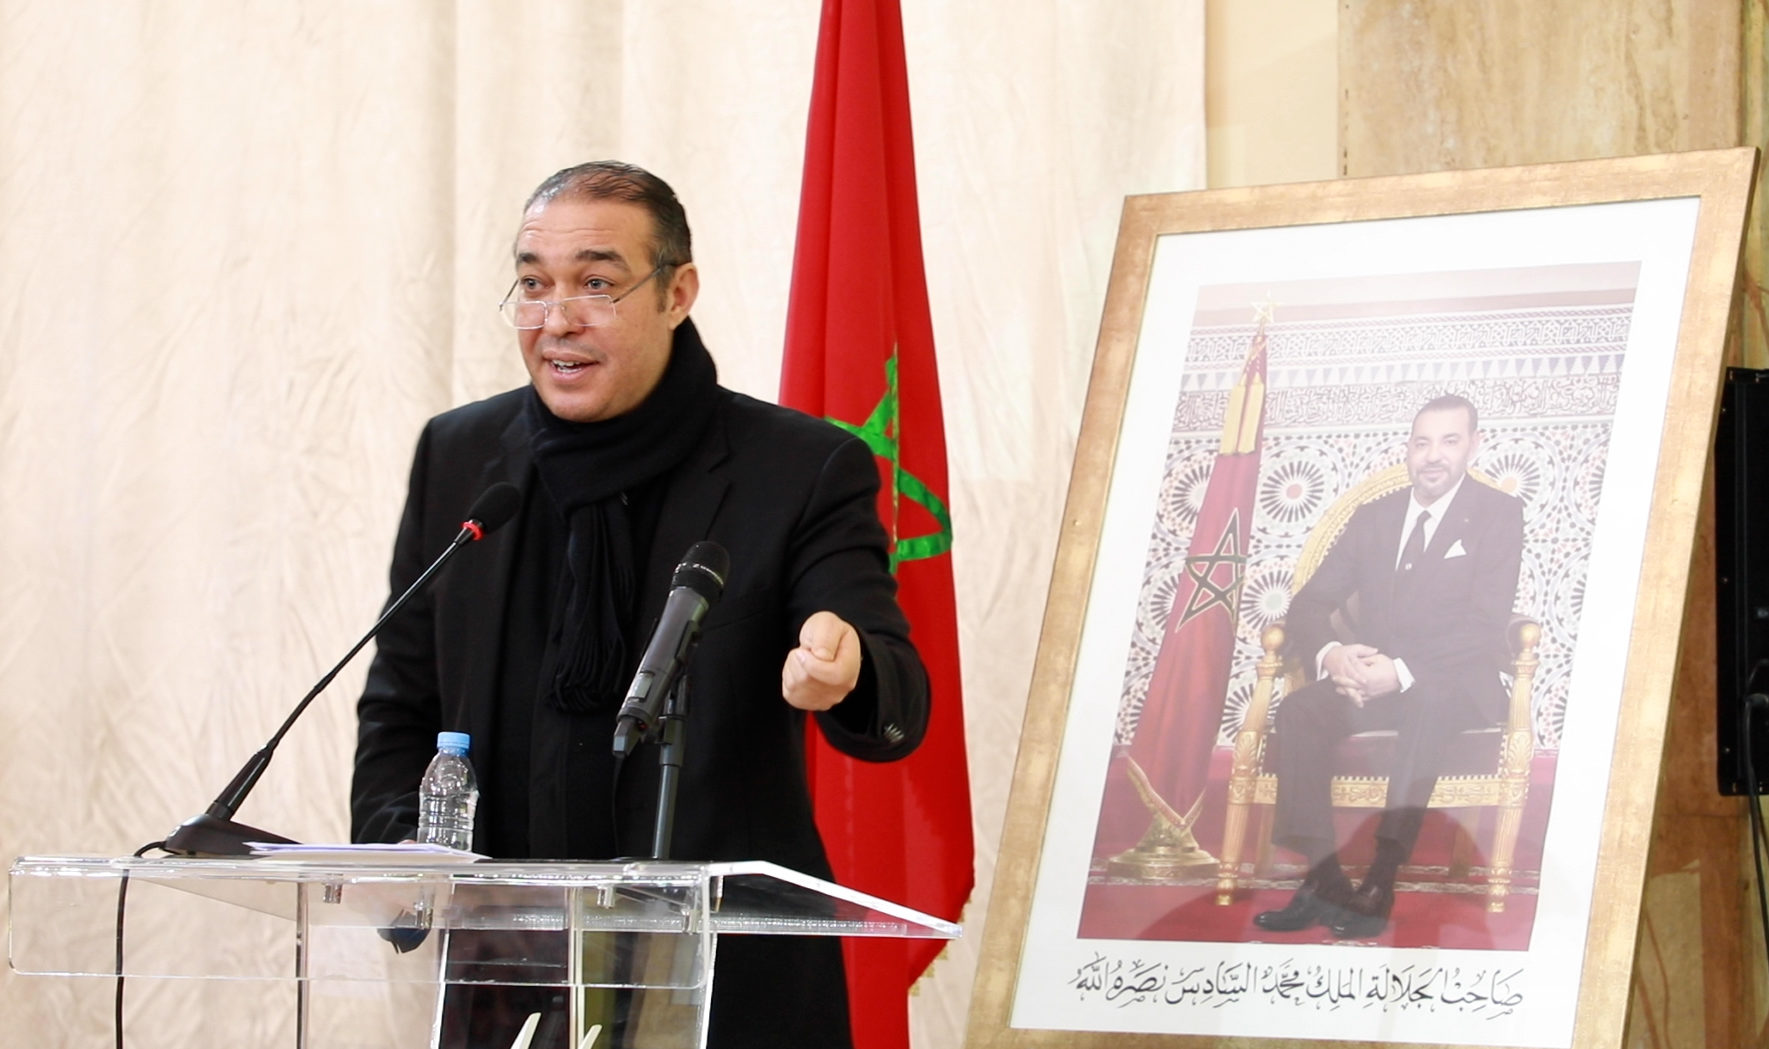 أوزين.. الخطاب الملكي رد إيجابي على الاستفزازات الرخيصة لخصوم المغرب